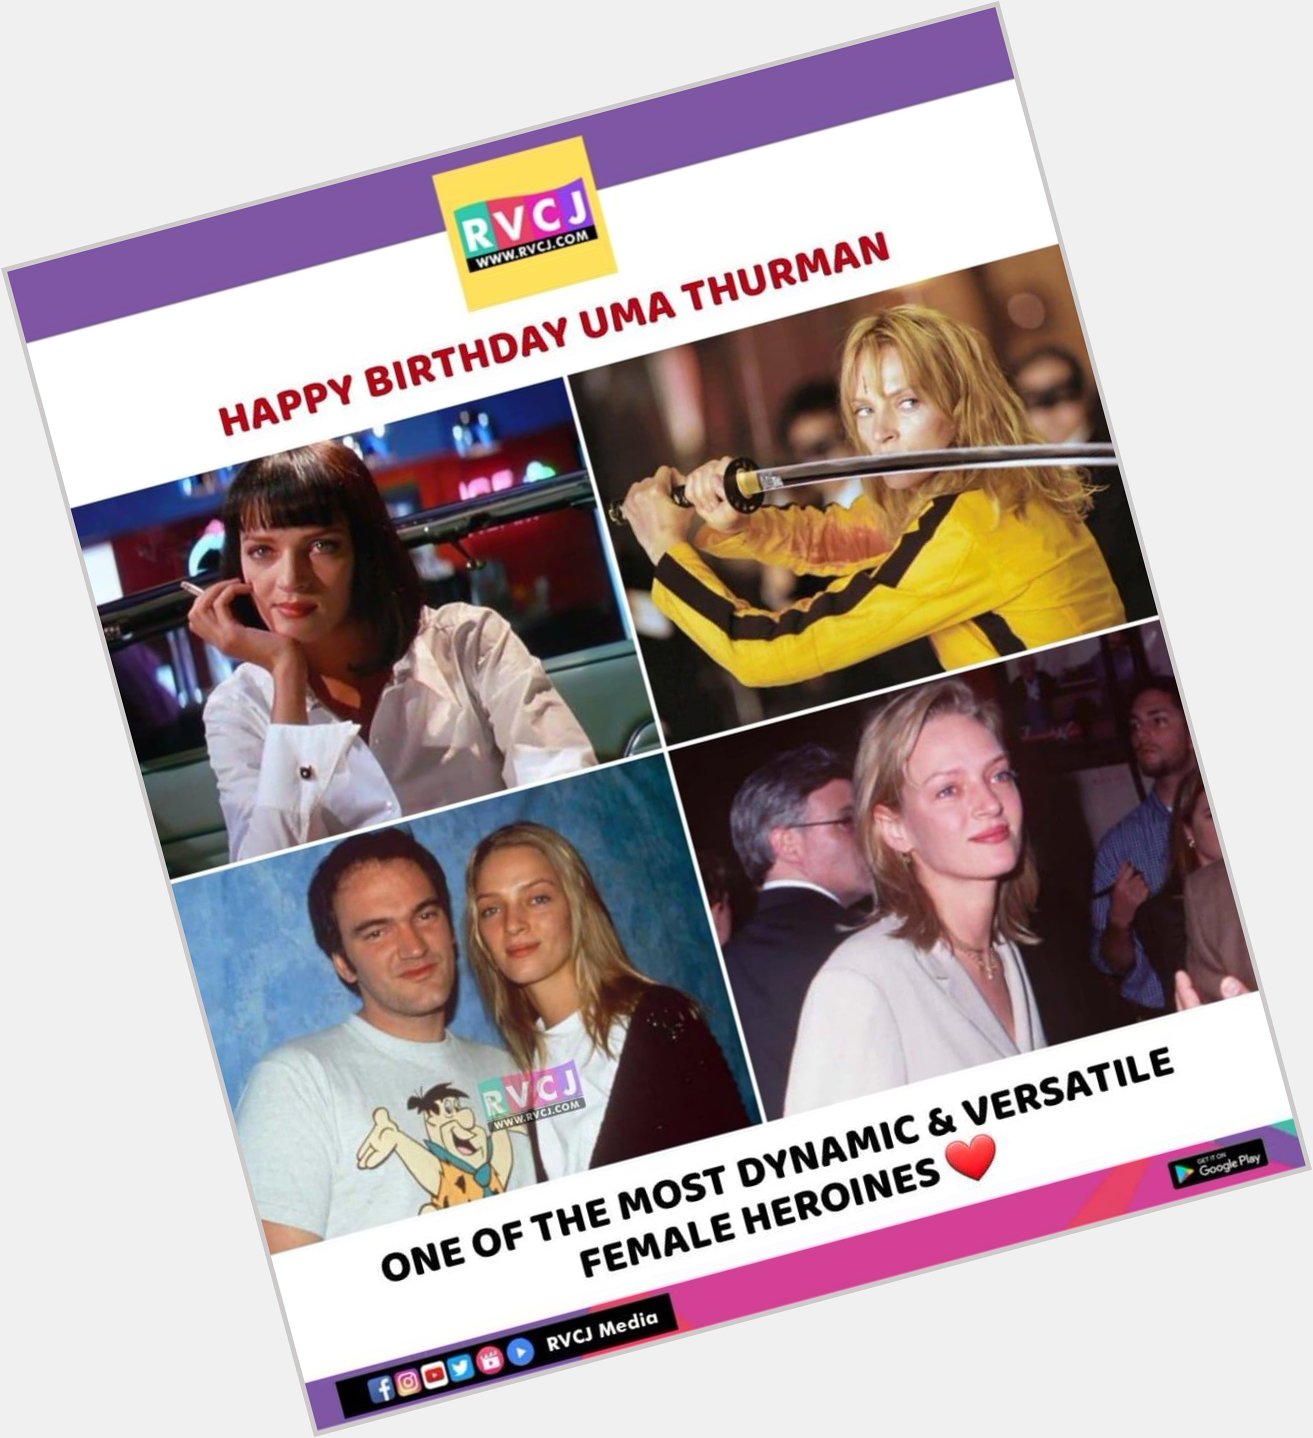 Happy Birthday Uma Thurman        